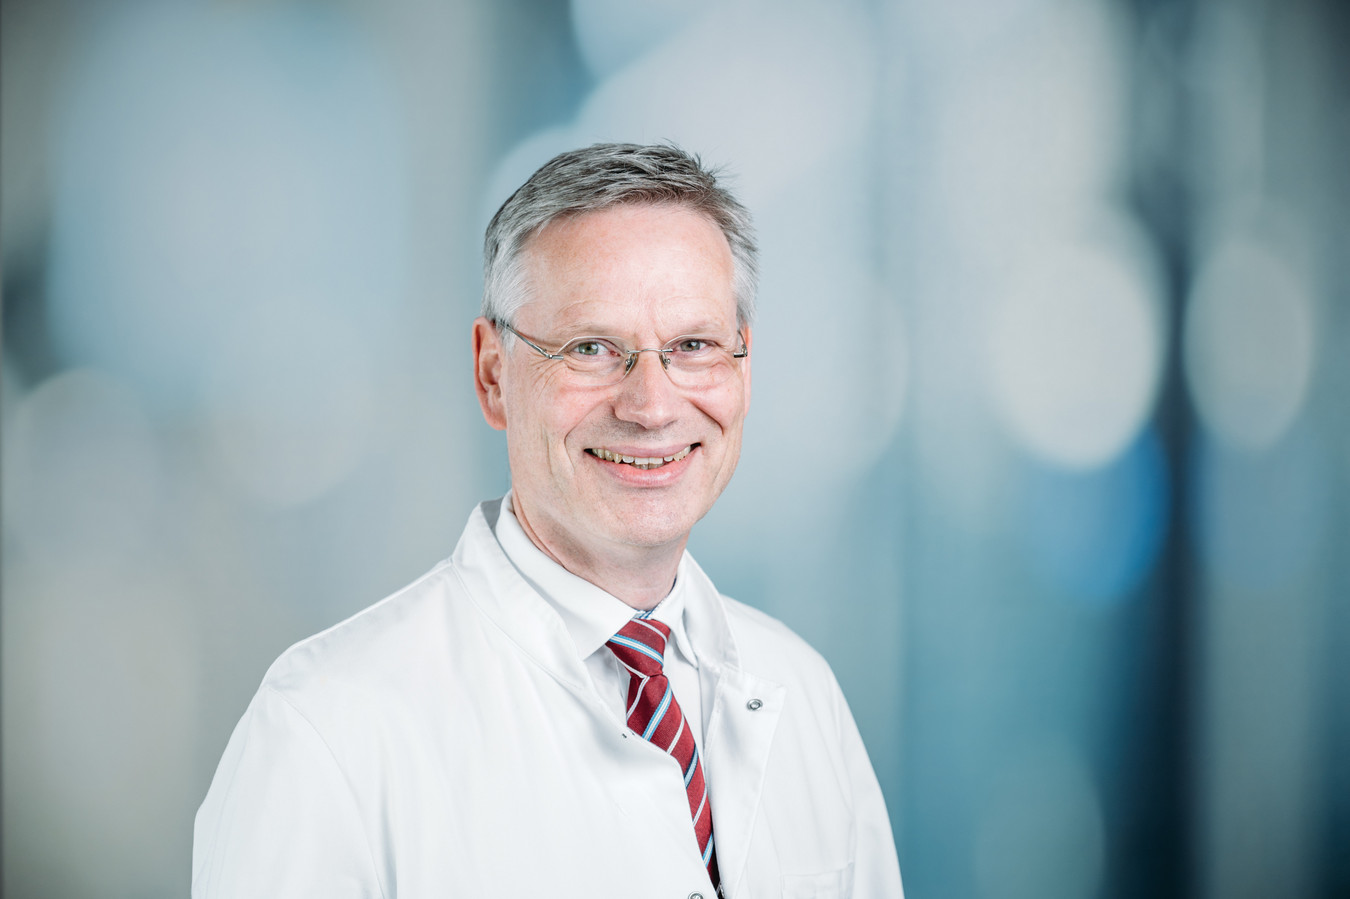 Porträtfoto von freundlich lächelndem Prof. Müller-Schimpfle